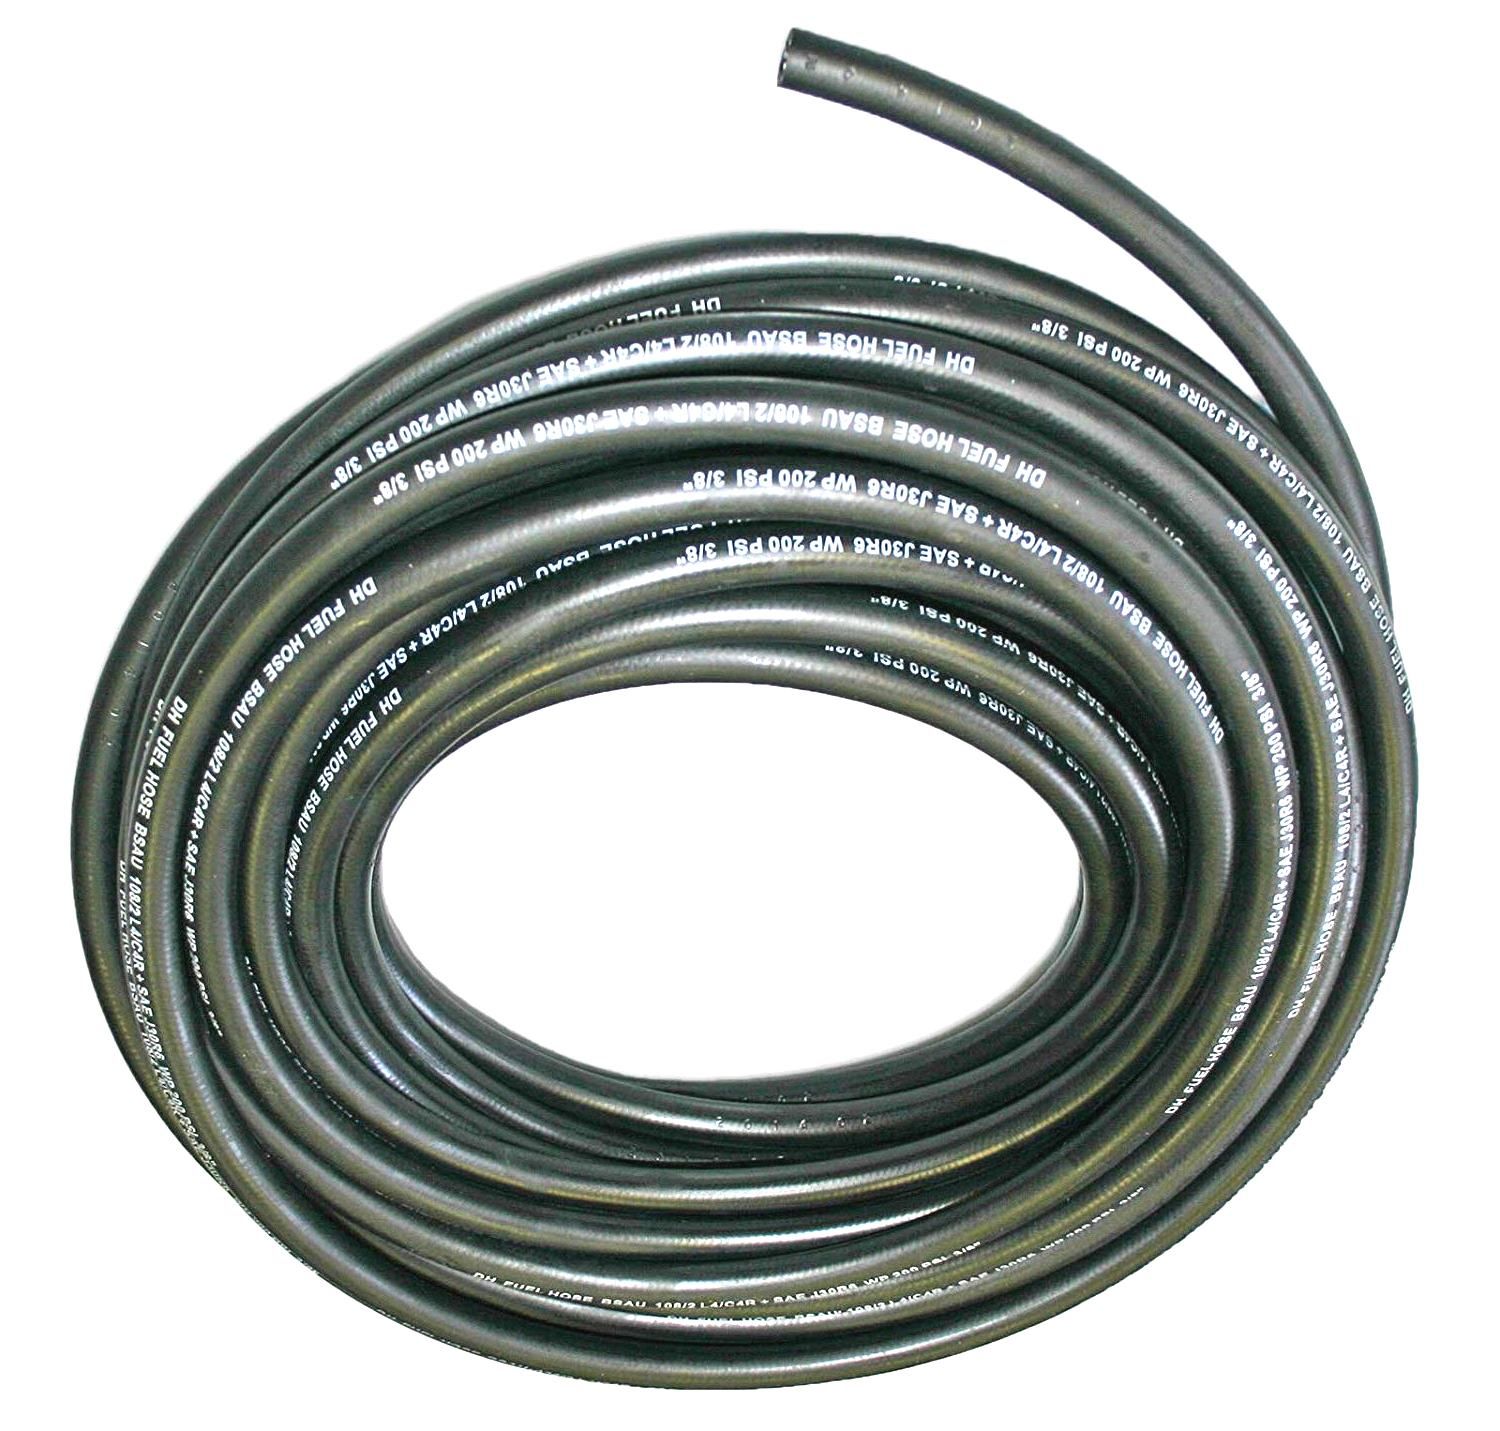 Palivová hadička gumová,délka:1m,vnější průměr:8mm,vnitřní průměr:5mm